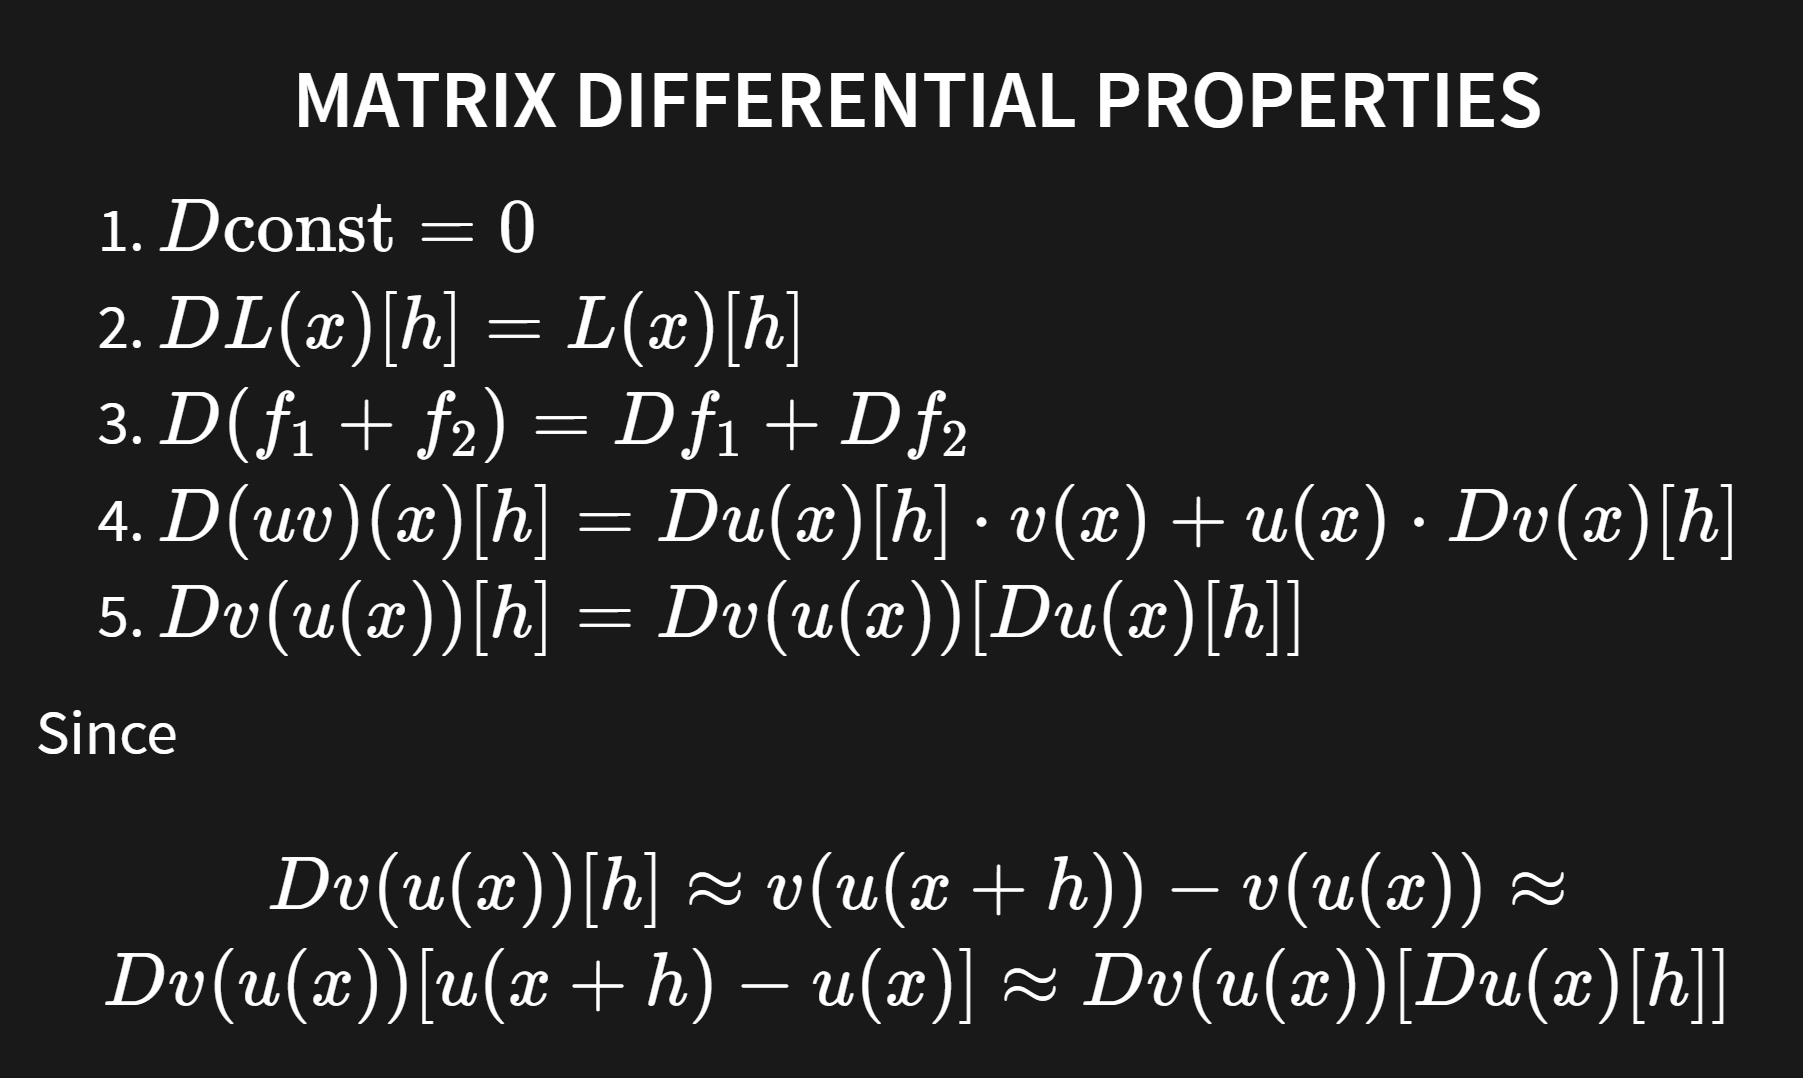 mat_dif_properties